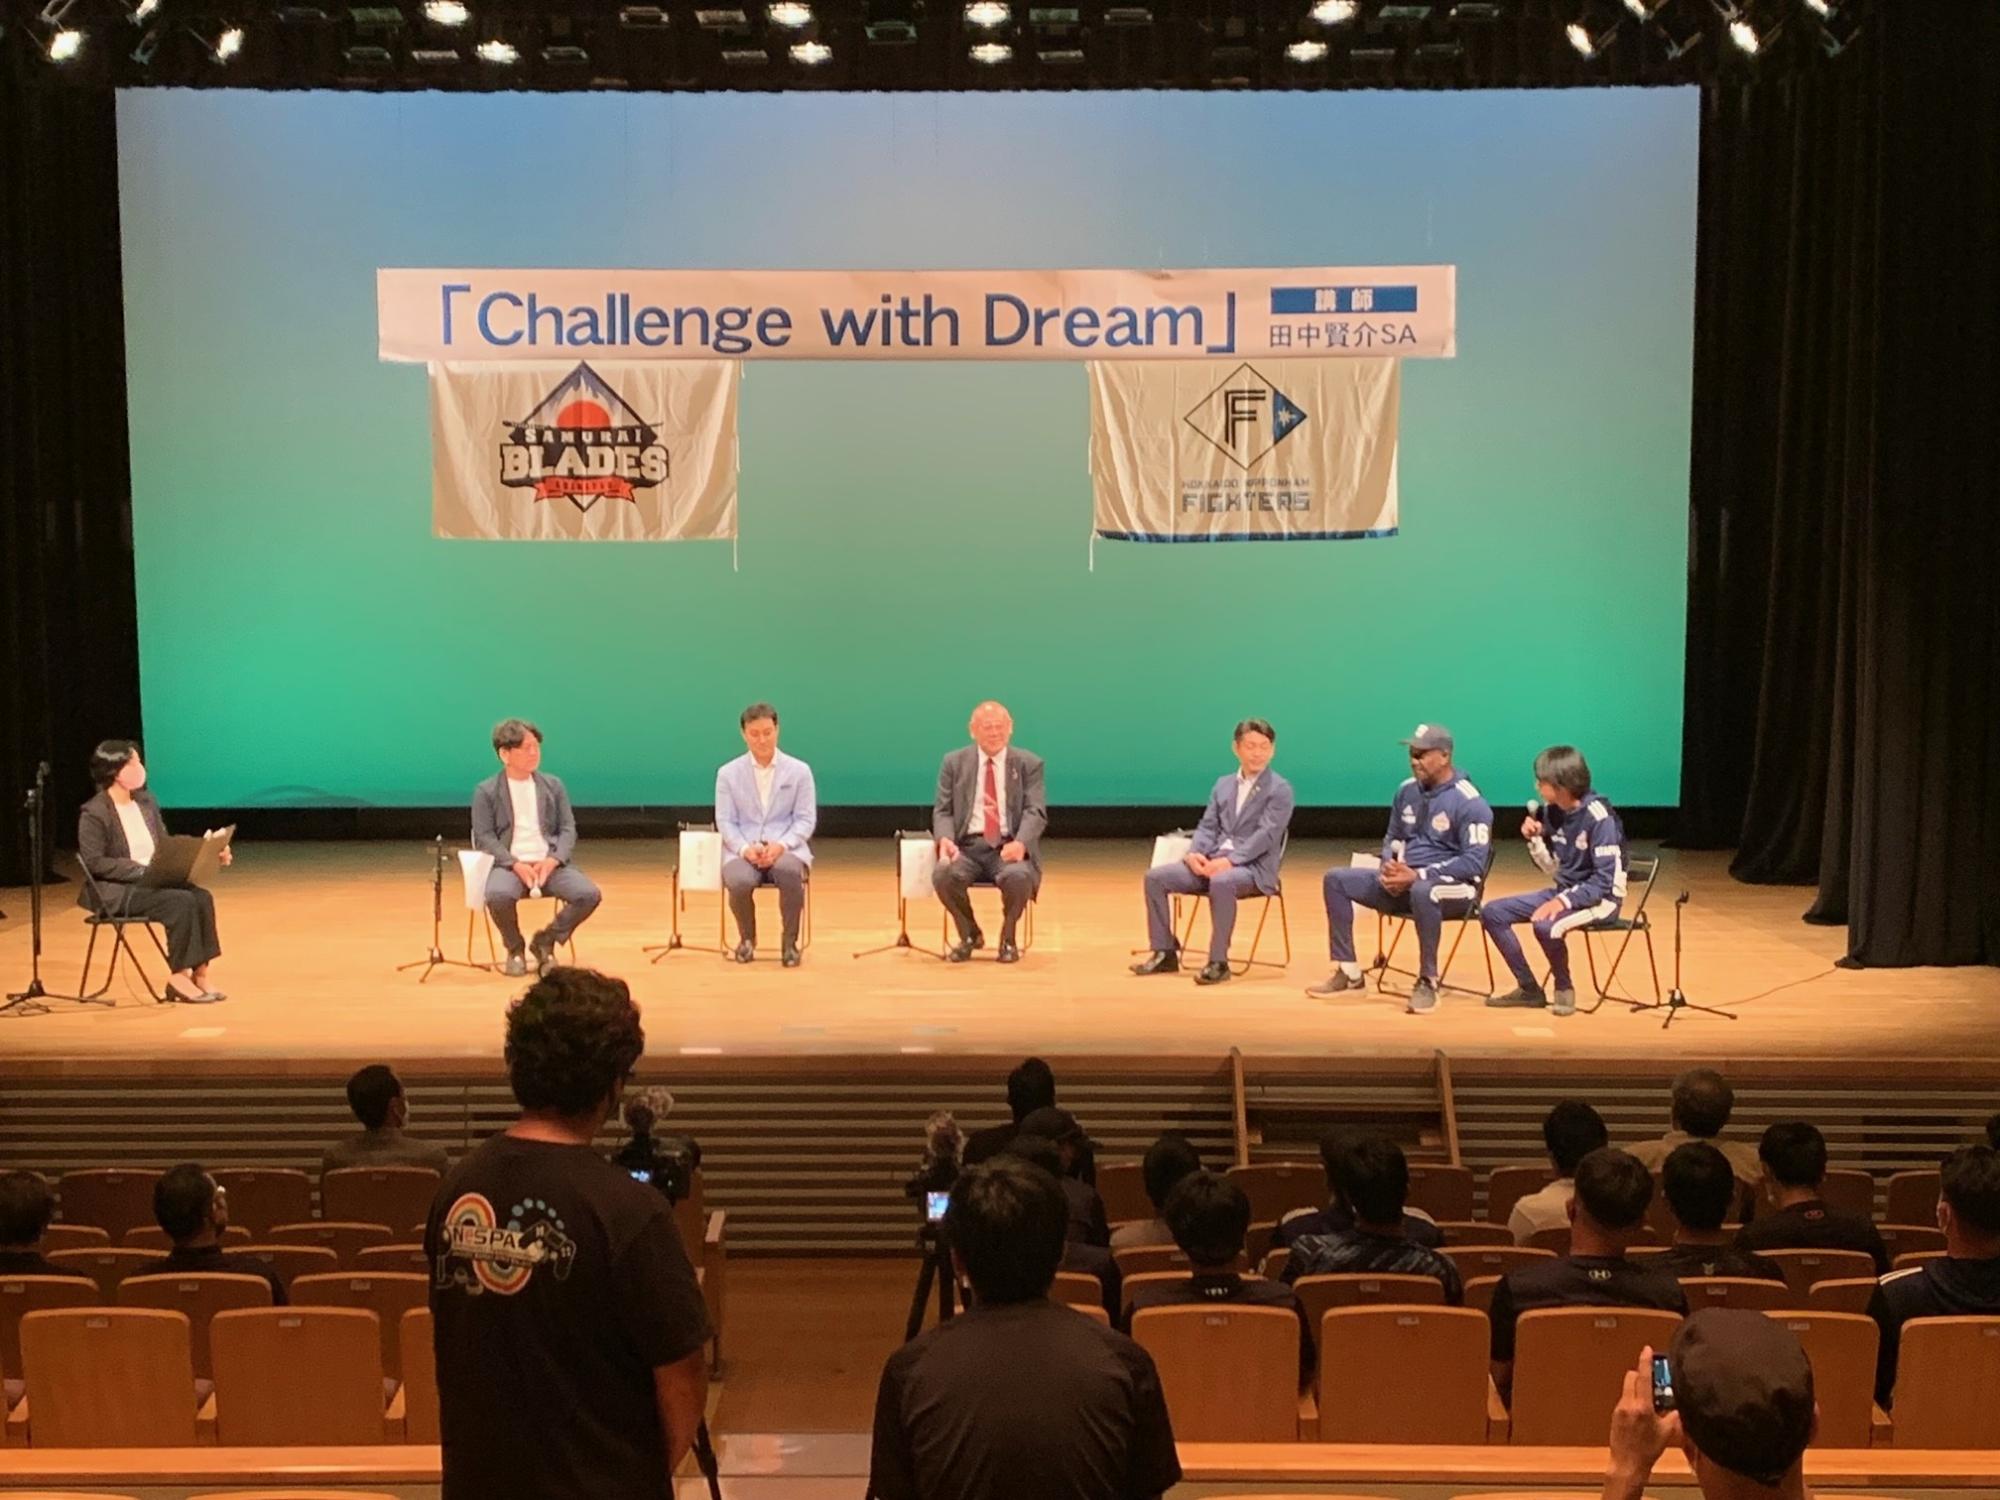 「Challenge with Dream」と書かれた横断幕が掲げられたステージ上に6名の関係者と司会者が座り、トークライブが行われている様子の写真